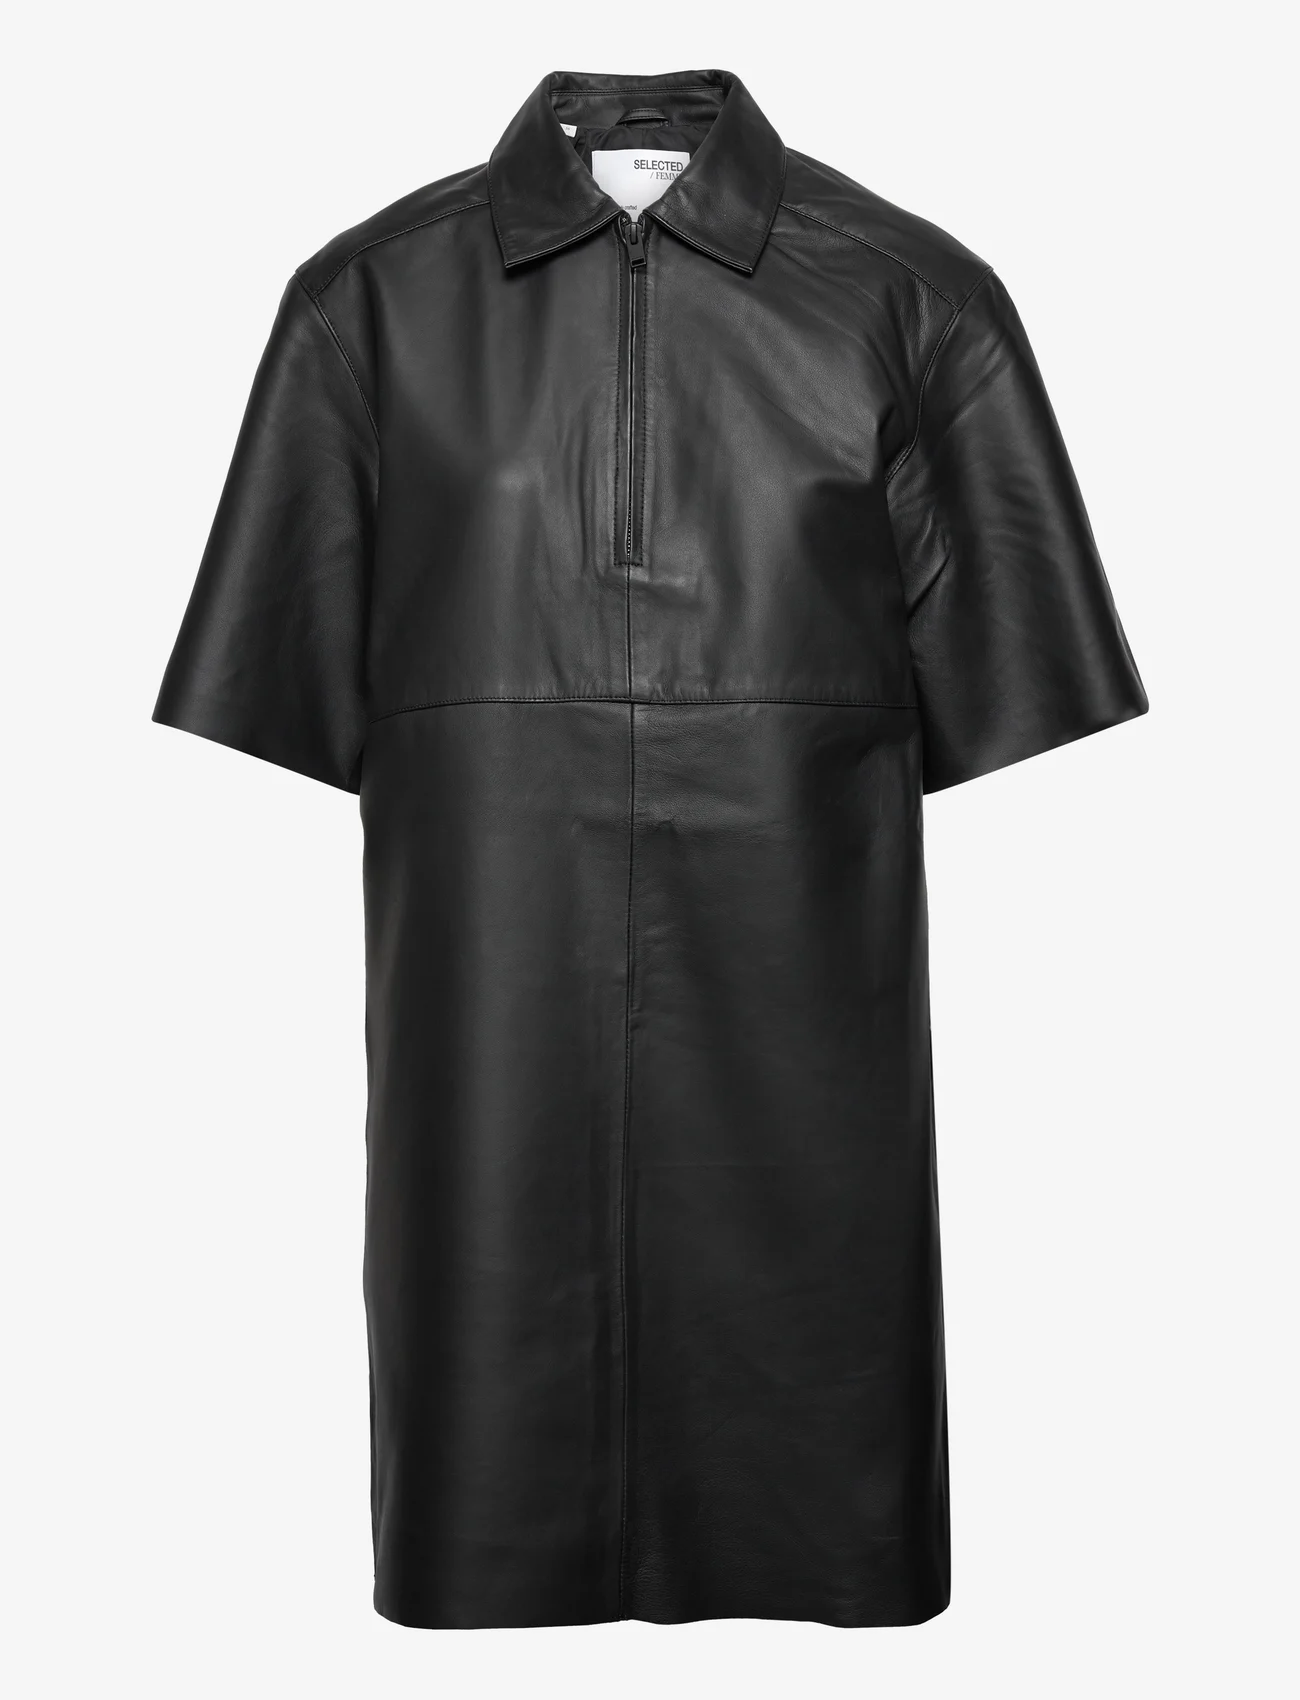 Selected Femme - SLFBERTA 2/4 SHORT LEATHER DRESS B - skjortekjoler - black - 0